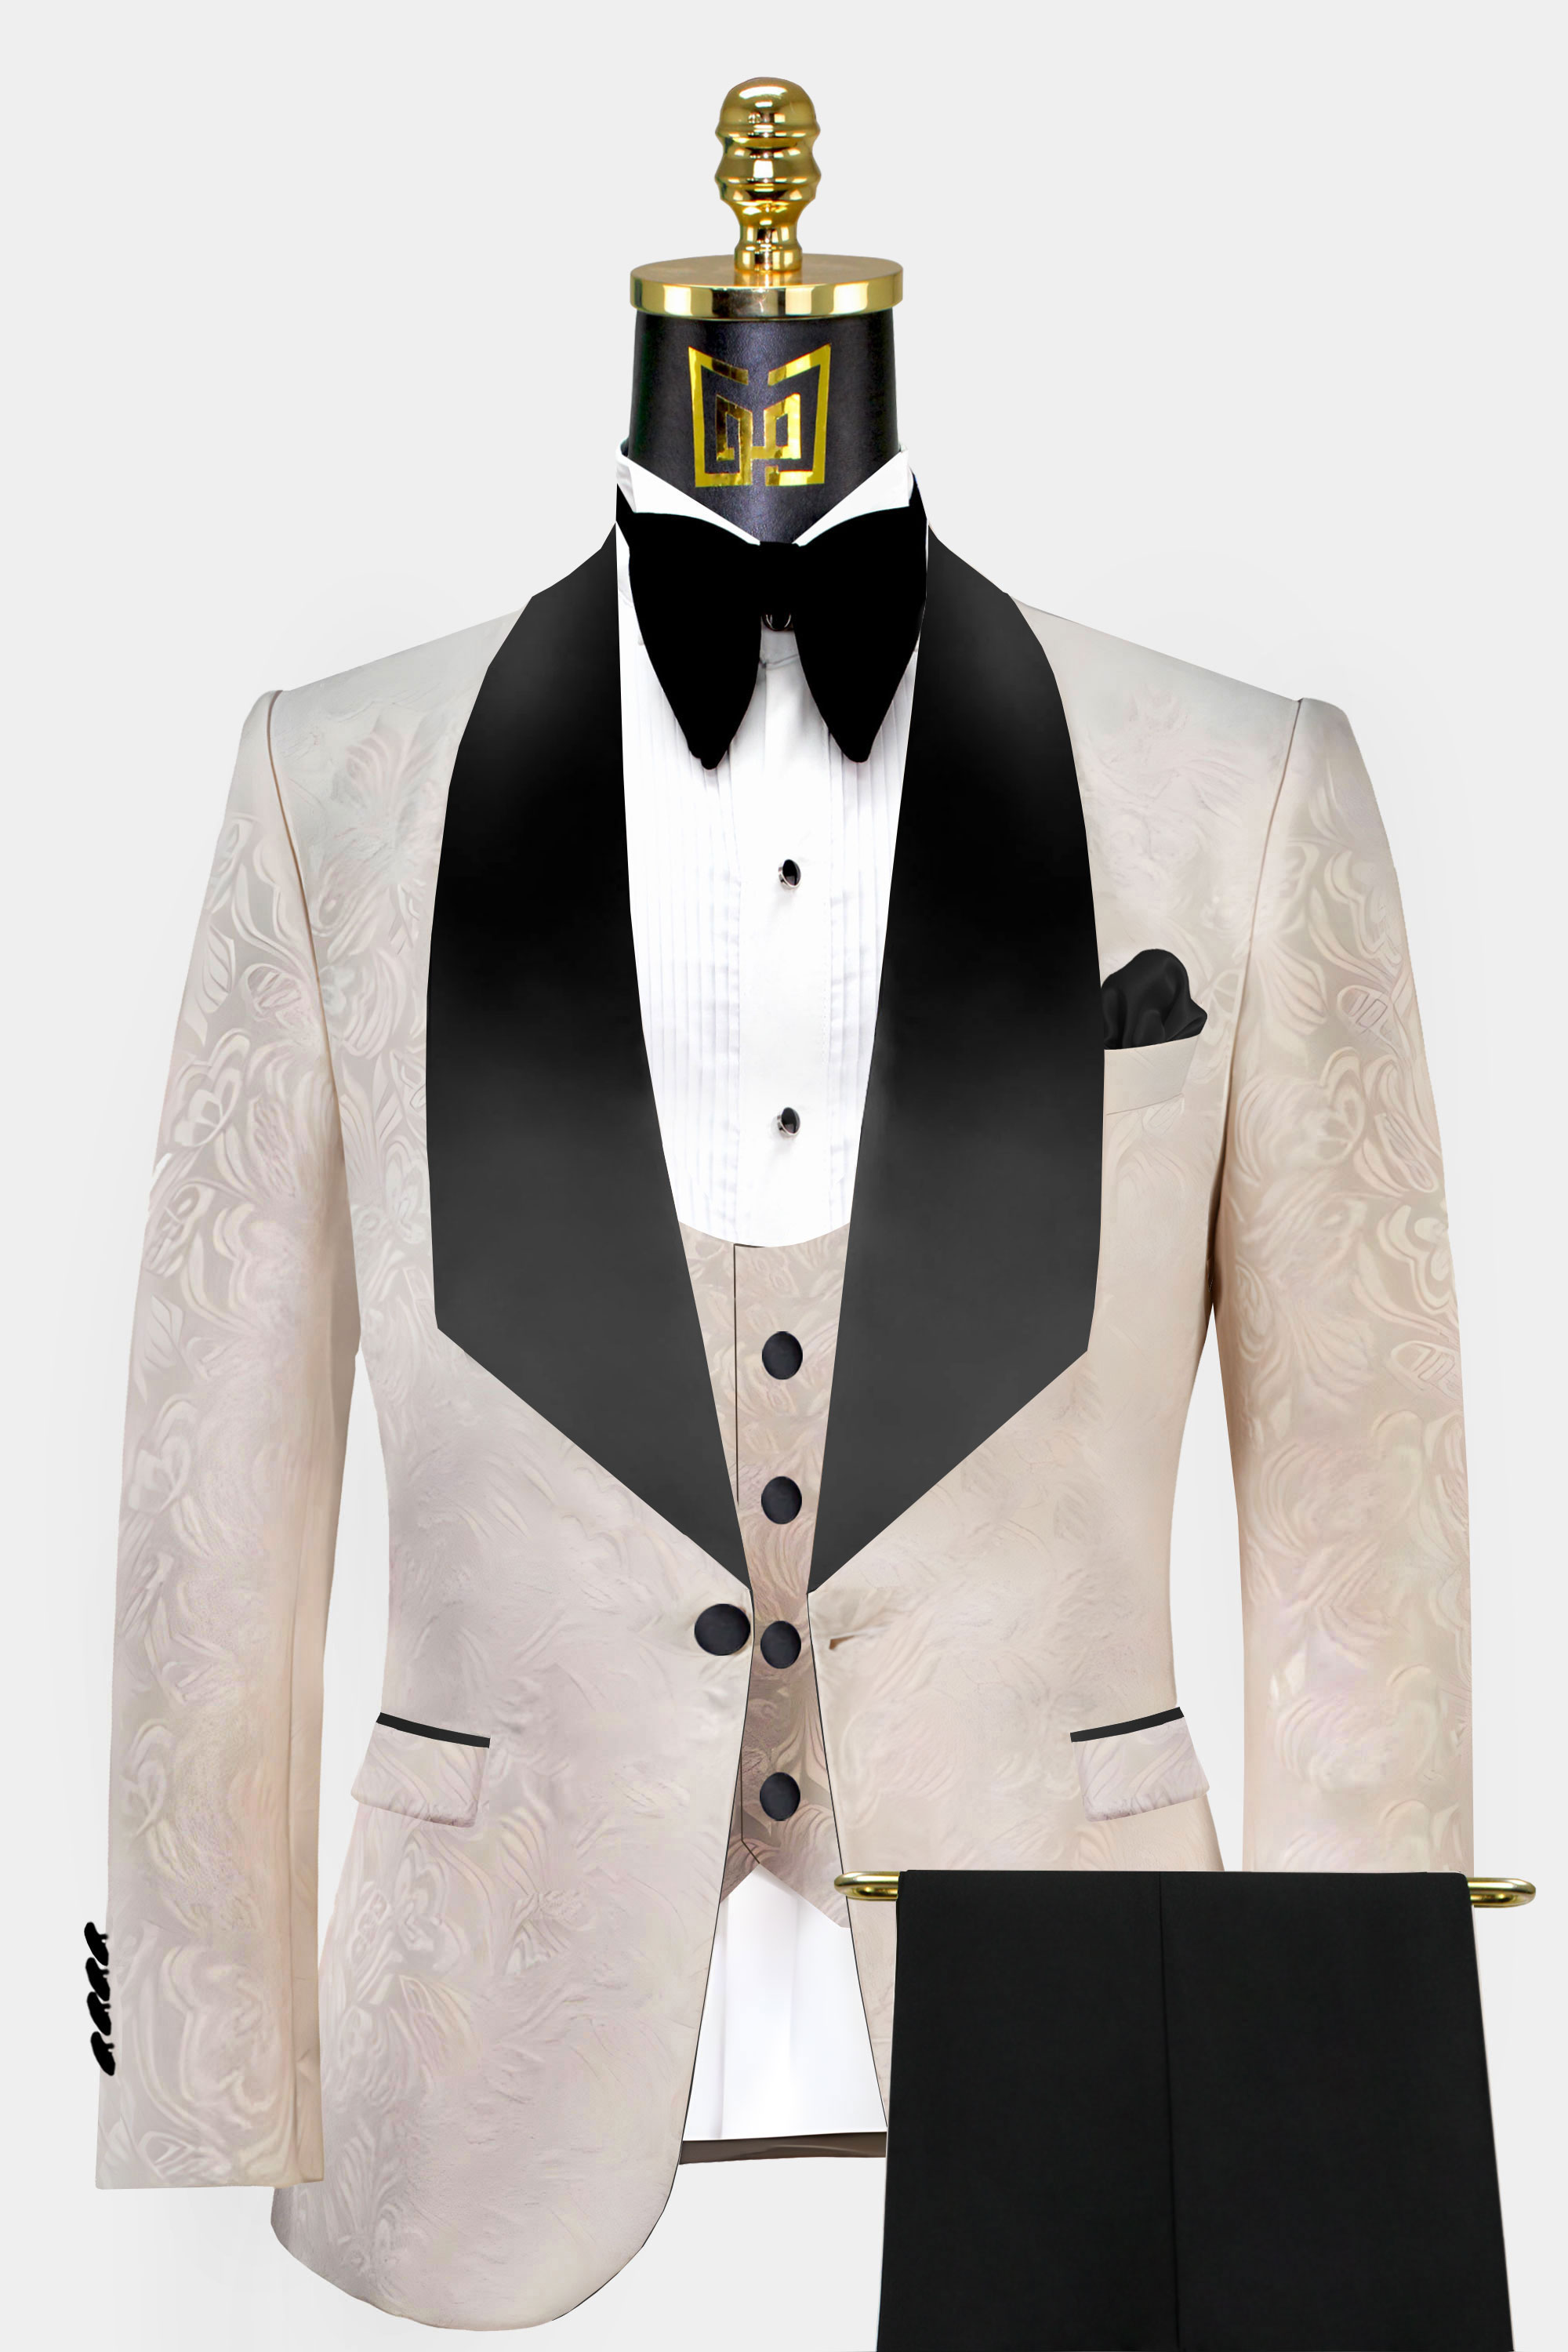 Jacquard Floral Suits for Men Wedding Black Gold Jacket Black Pant